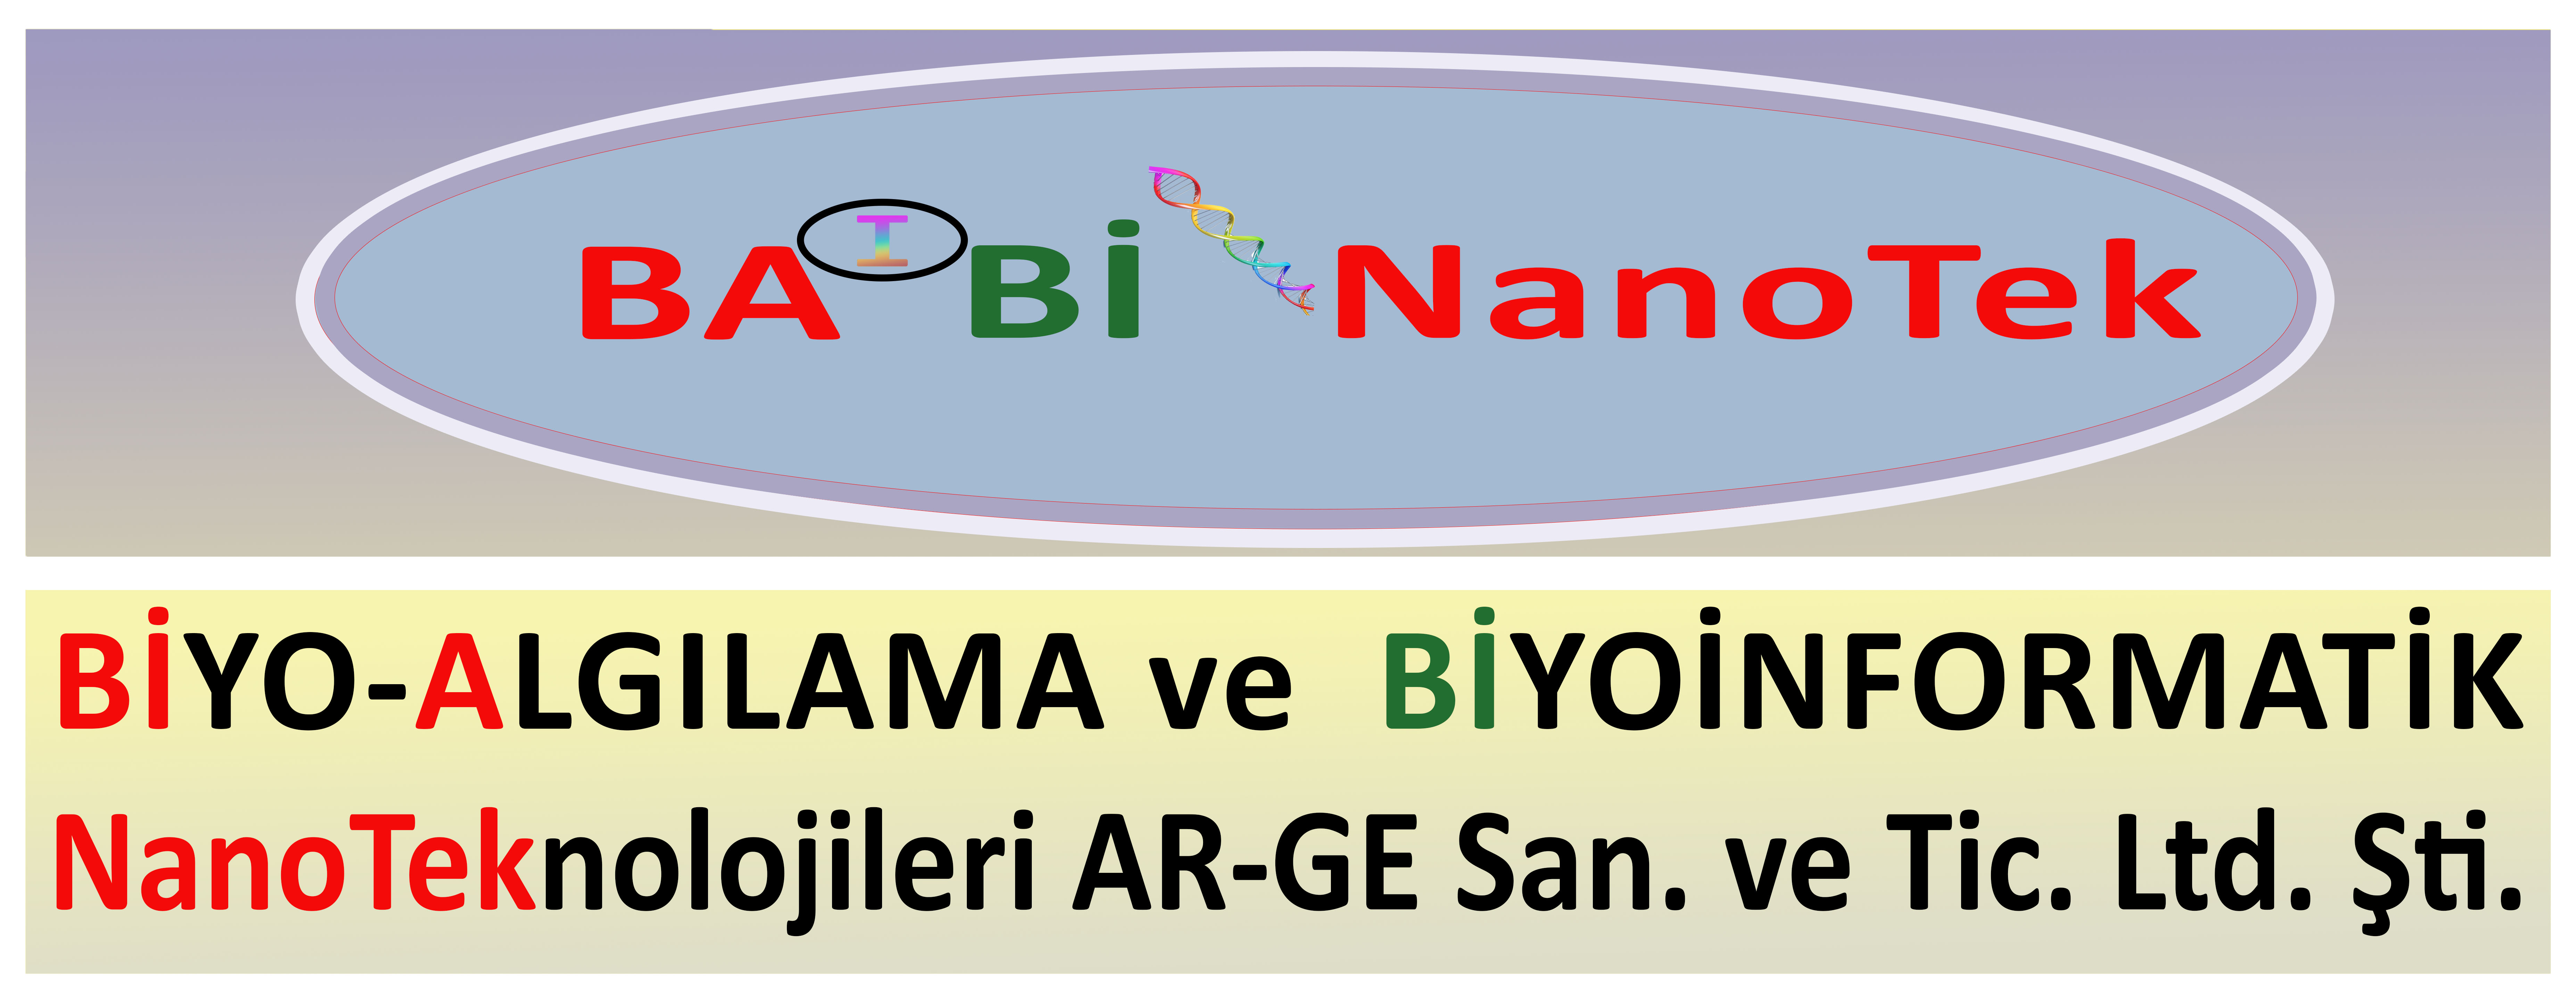 Biyo-algılama ve Biyoinformatik Nanoteknolojileri